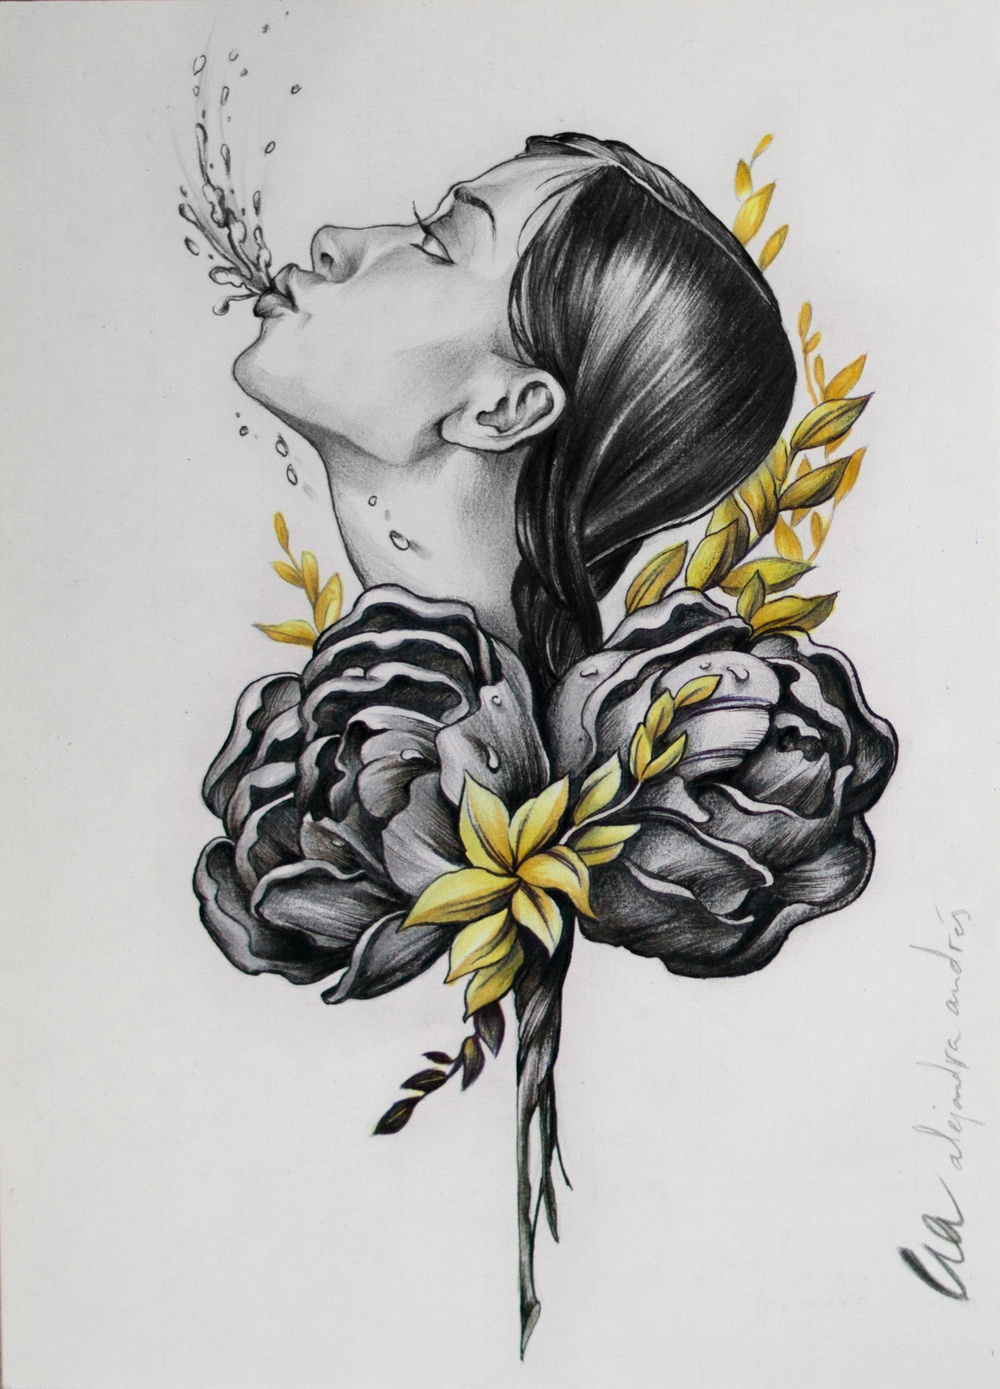 Illustration: Alejandra Andres, tatuerare i Barcelona